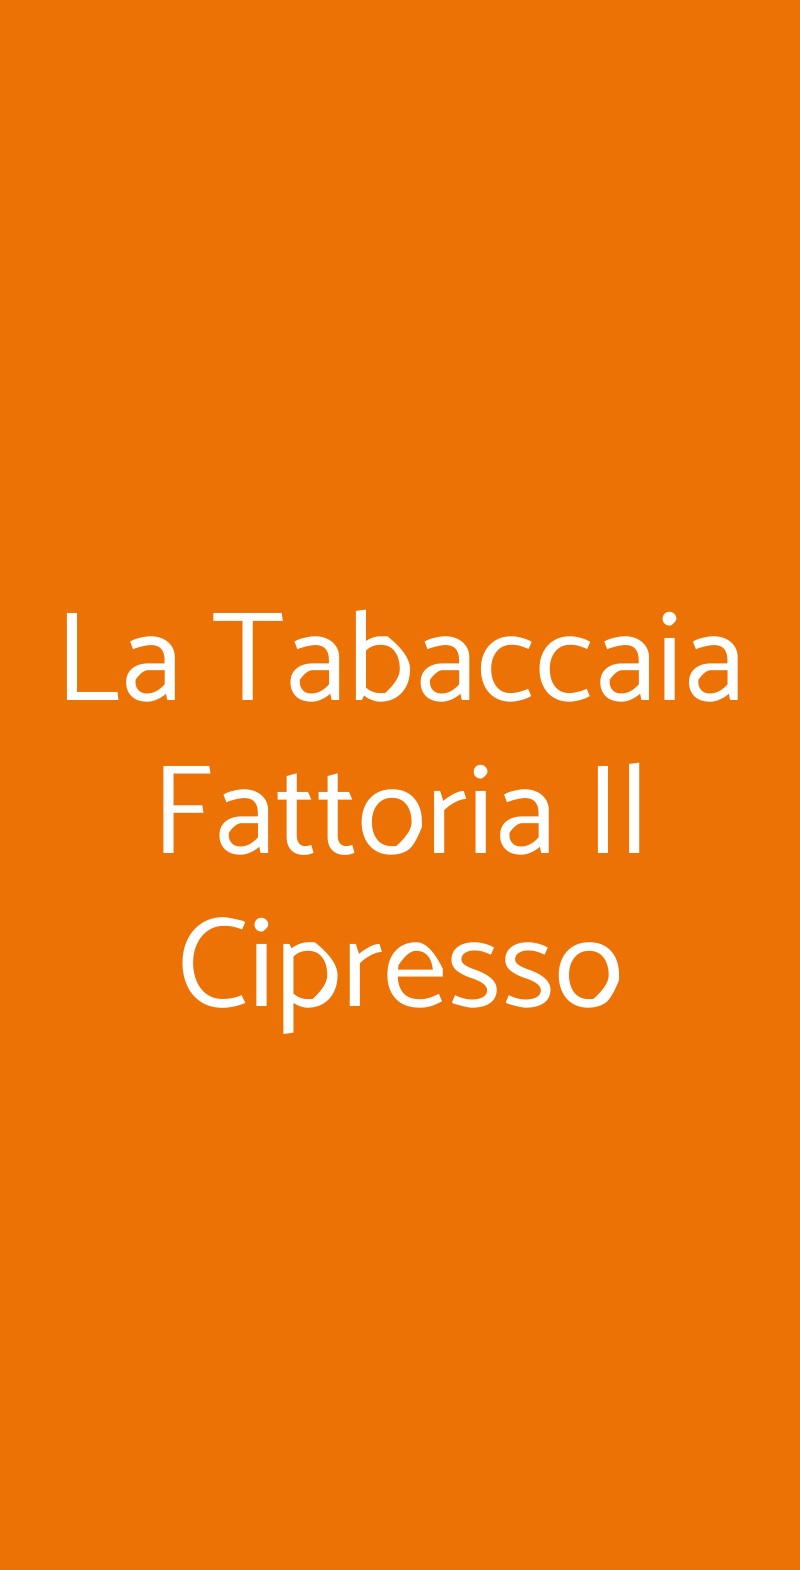 La Tabaccaia Fattoria Il Cipresso Arezzo menù 1 pagina